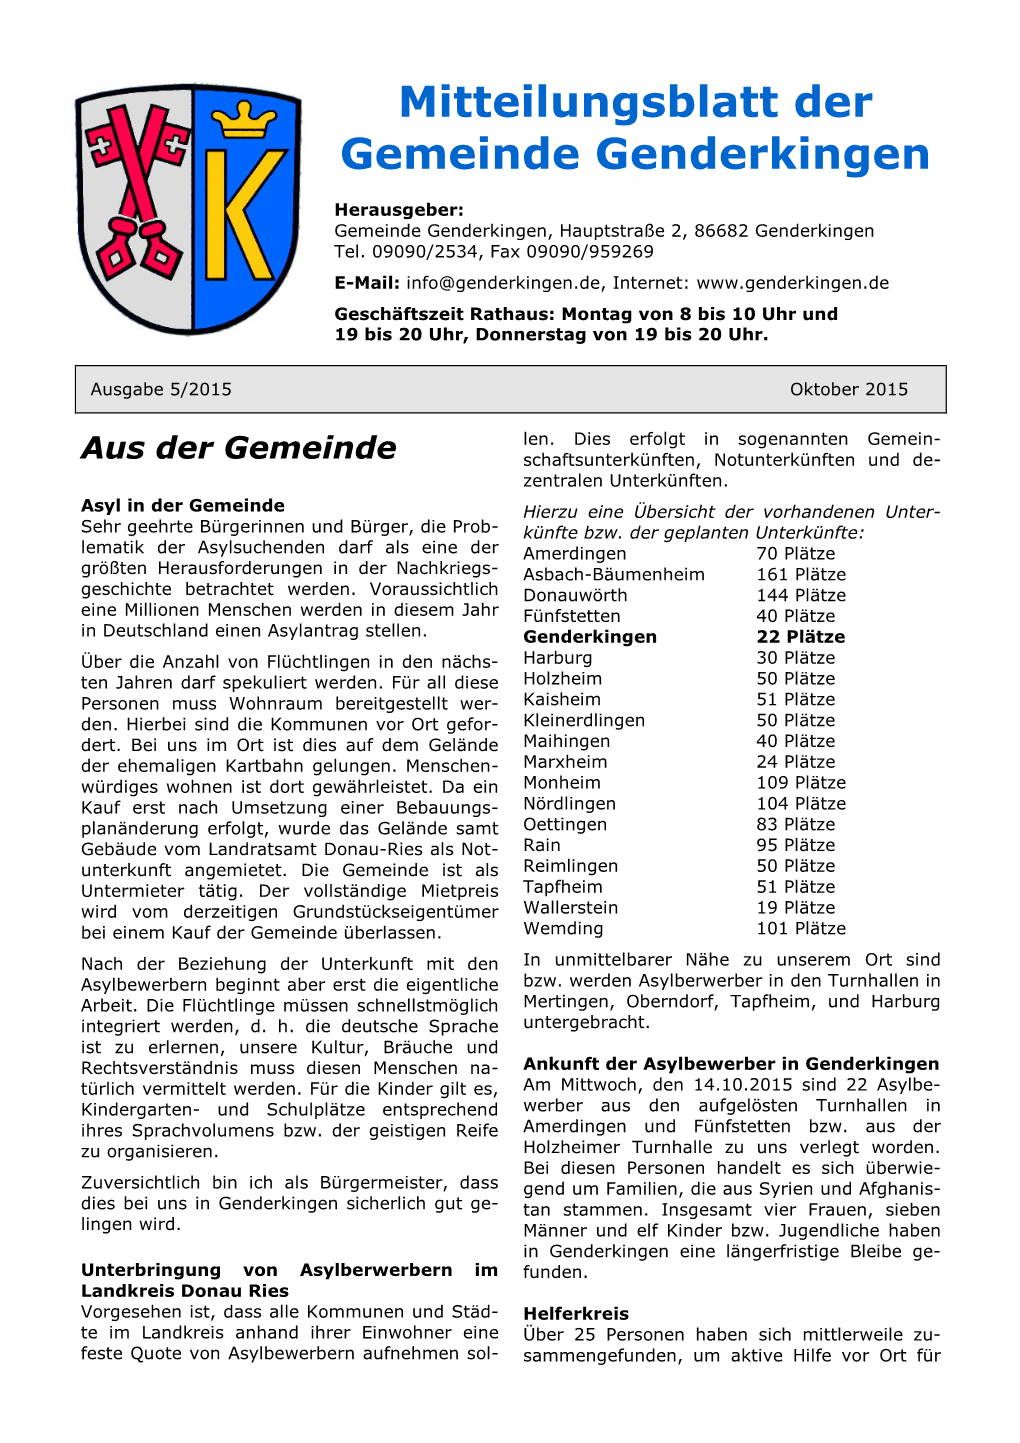 Mitteilungsblatt Der Gemeinde Genderkingen, Seite 2 Oktober 2015